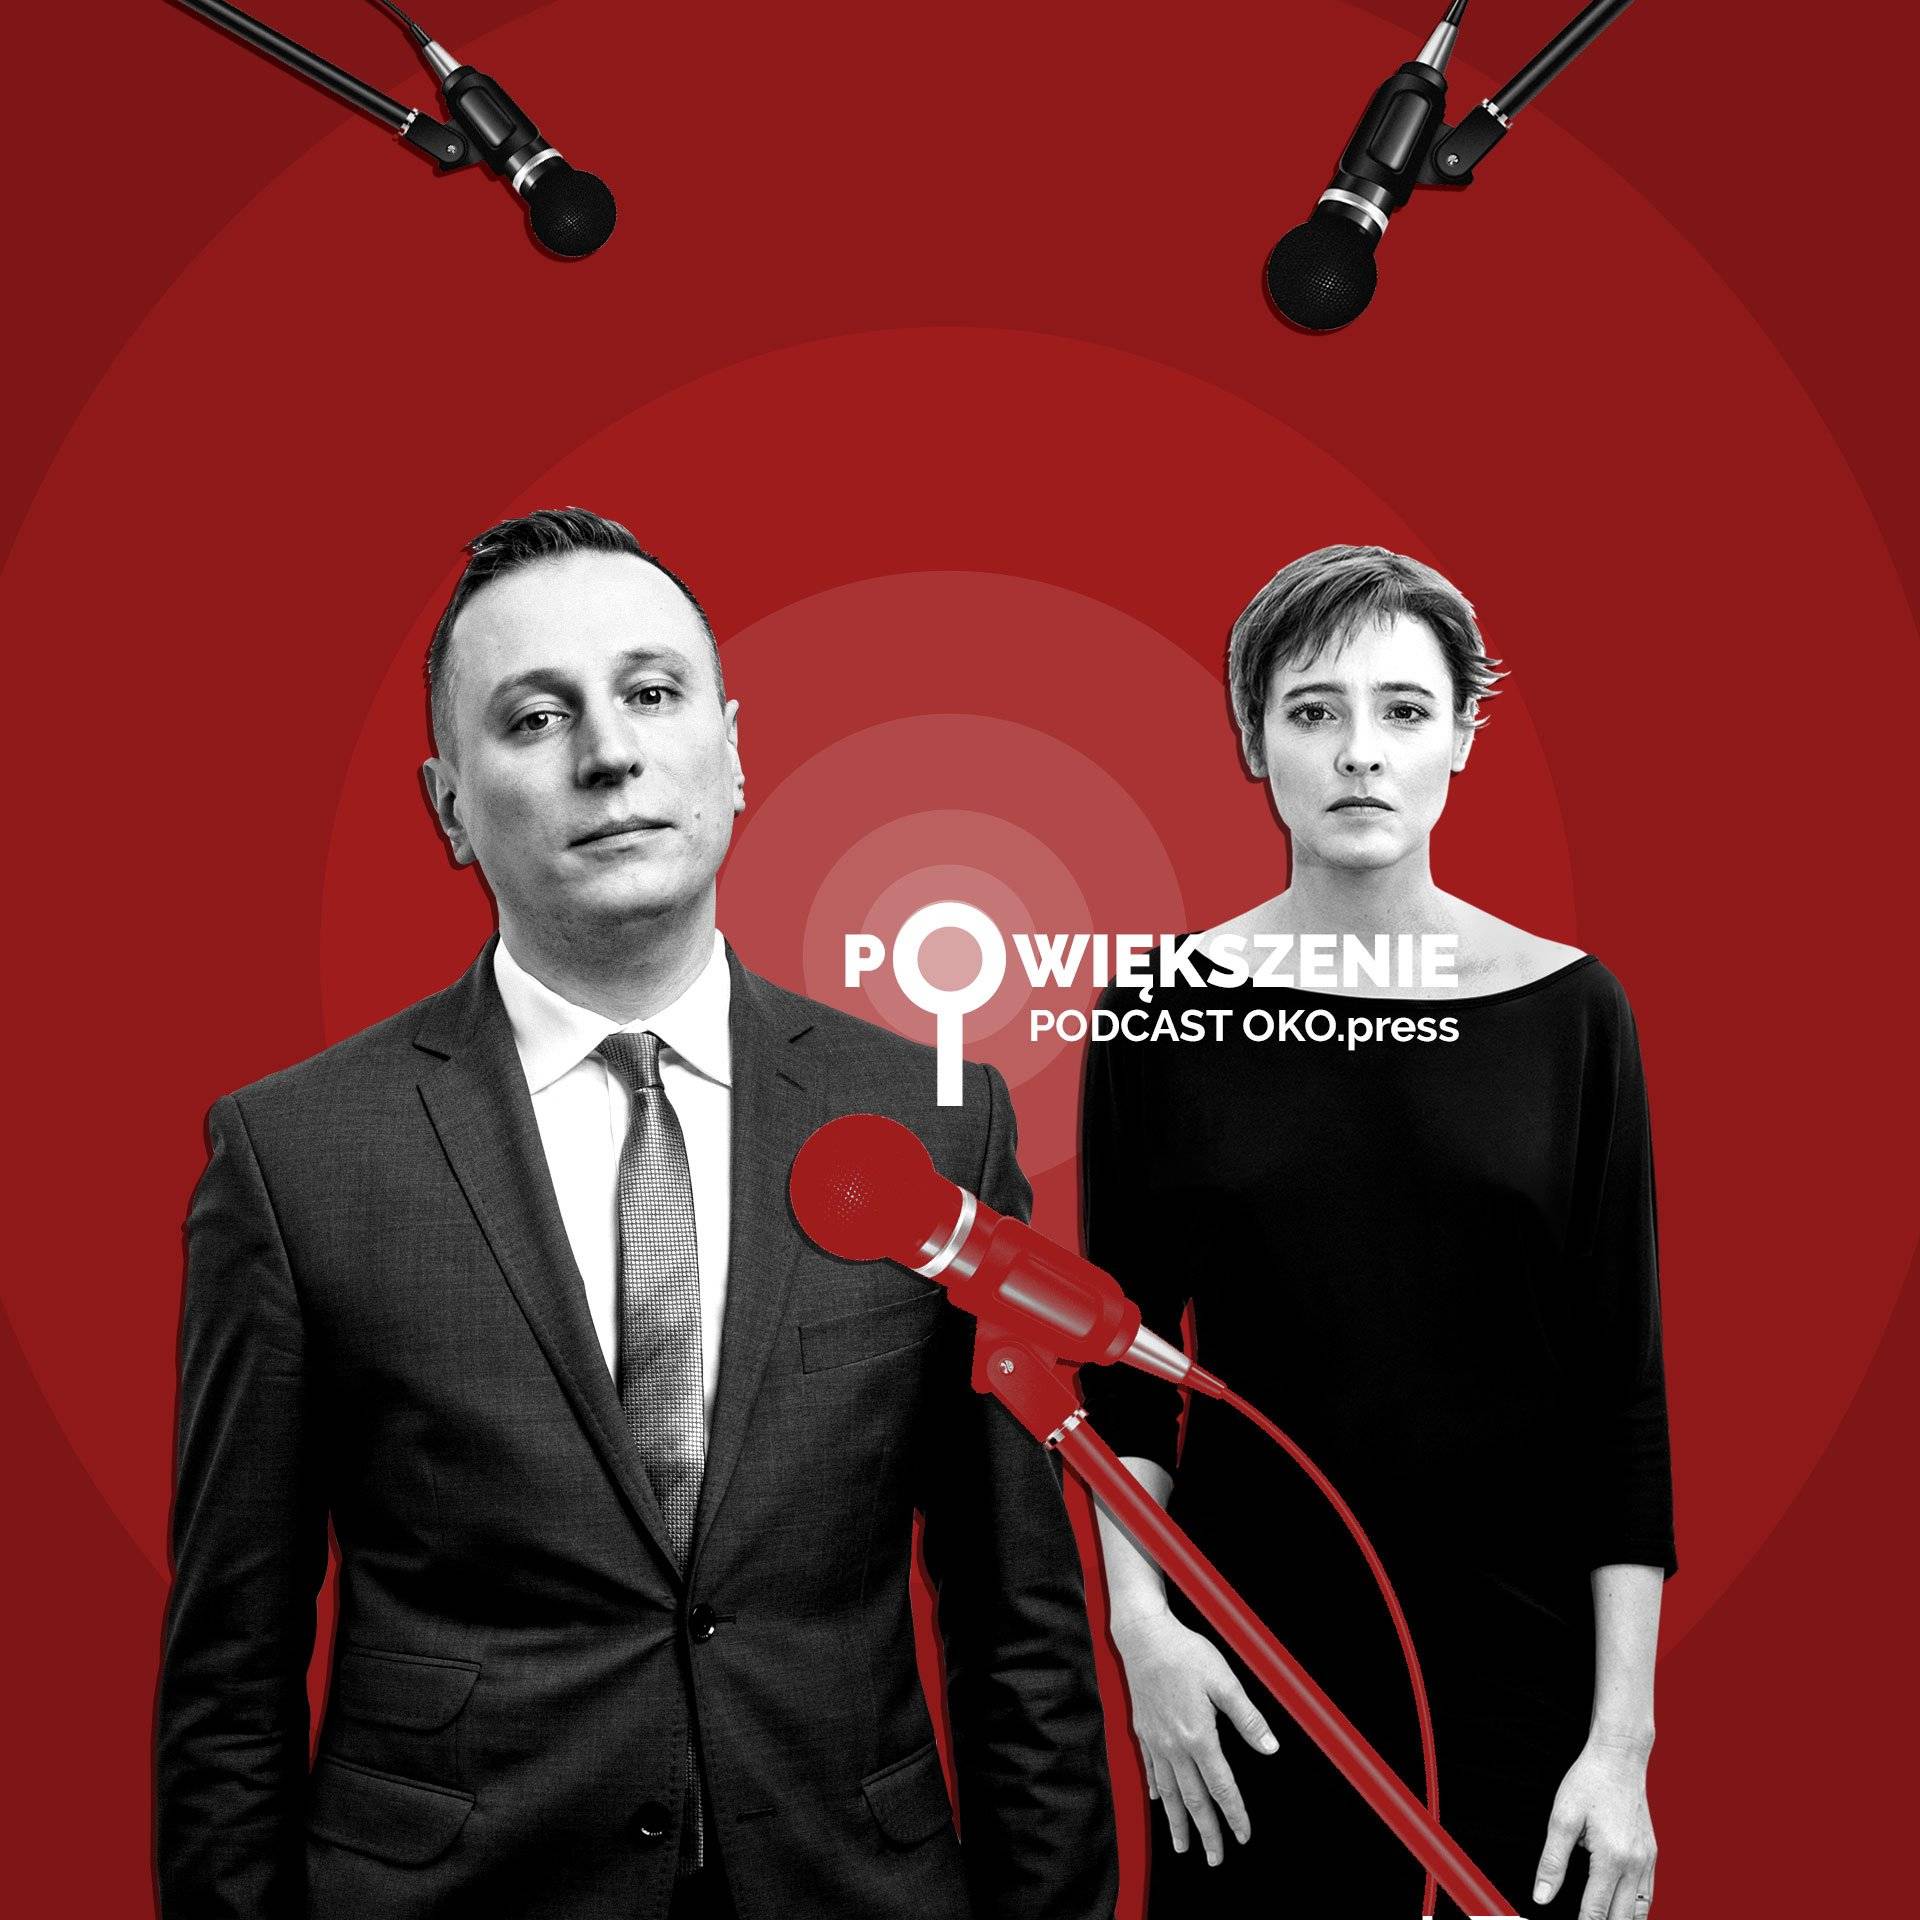 Powiększenie - podcast OKO.press - Pegasus - Krzysztof Brejza